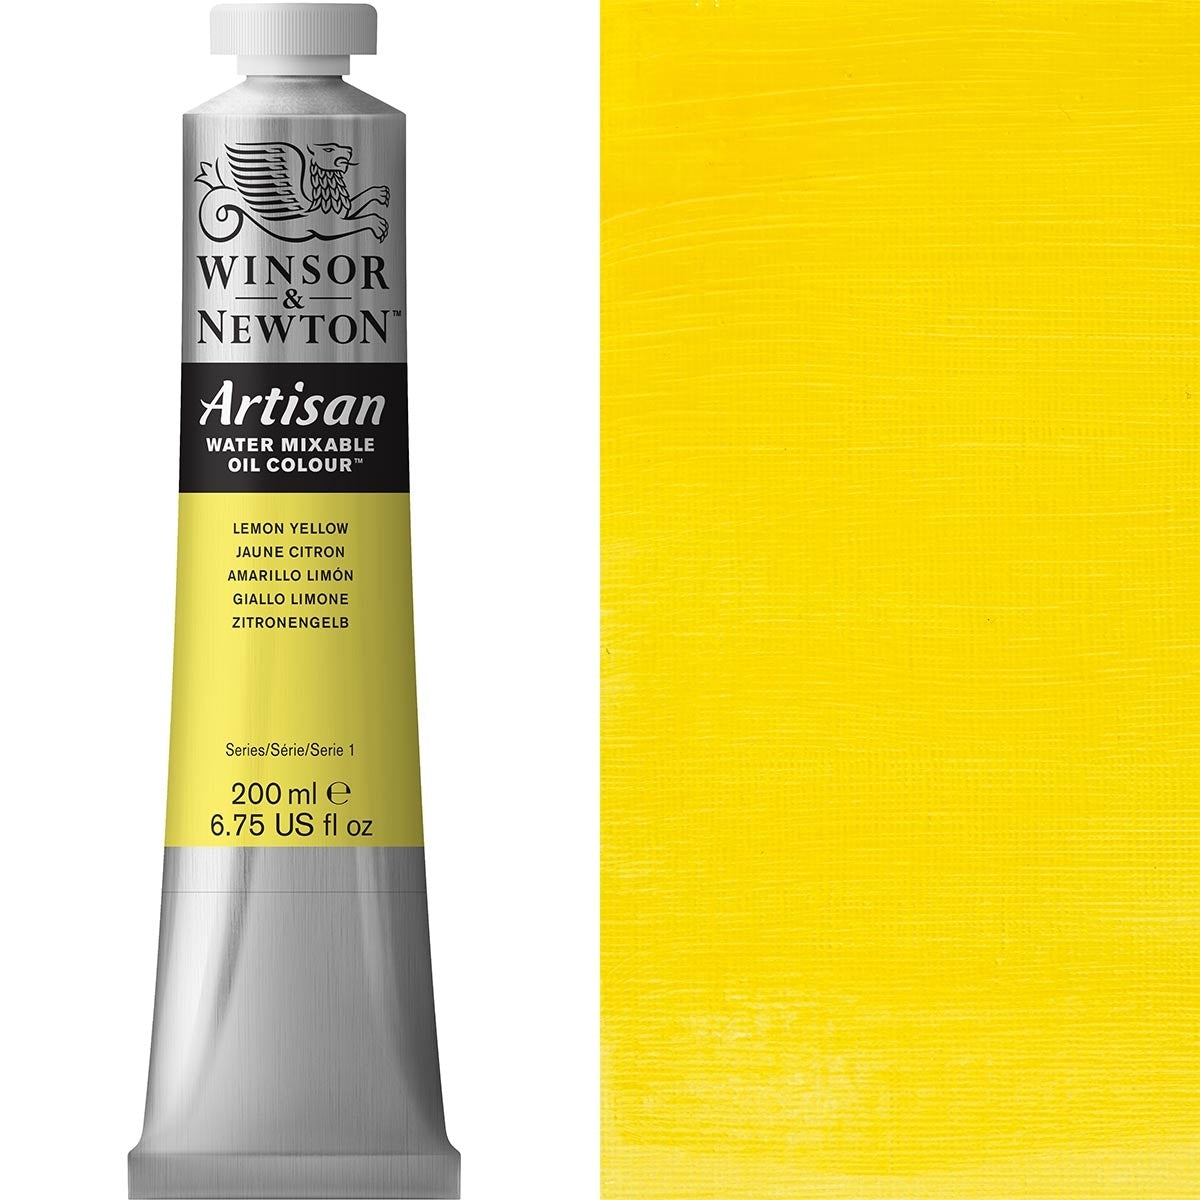 Winsor e Newton - Watermixable di colore olio artigiano - 200 ml - limone giallo